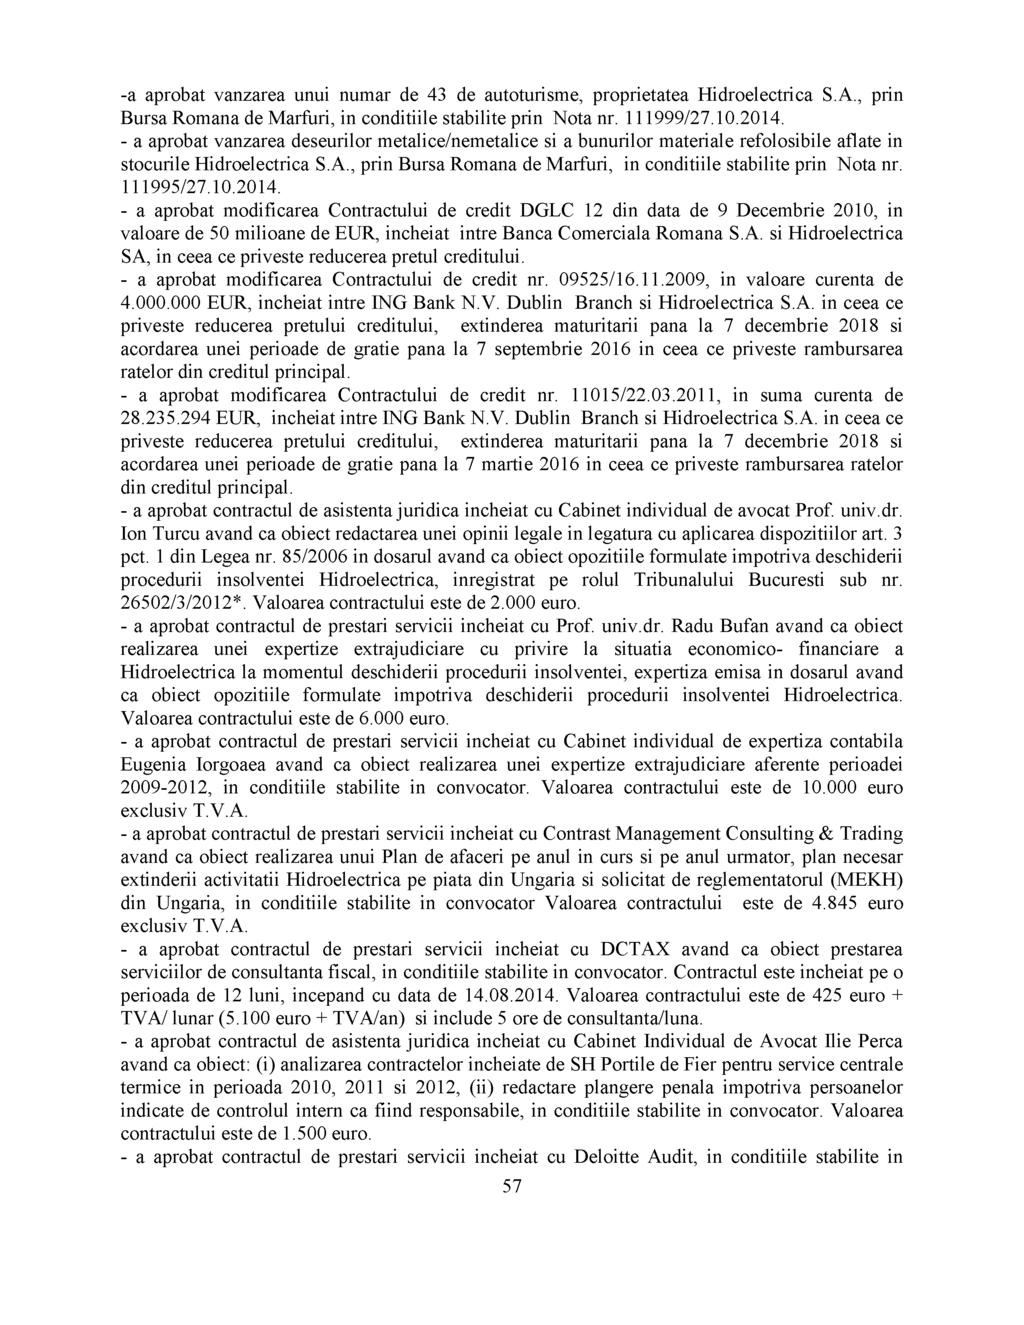 -a aprobat vanzarea unui numar de 43 de autoturisme, proprietatea Hidroelectrica S.A., prin Bursa Romana de Marfuri, in conditiile stabilite prin Nota nr. 111999/27.10.2014.